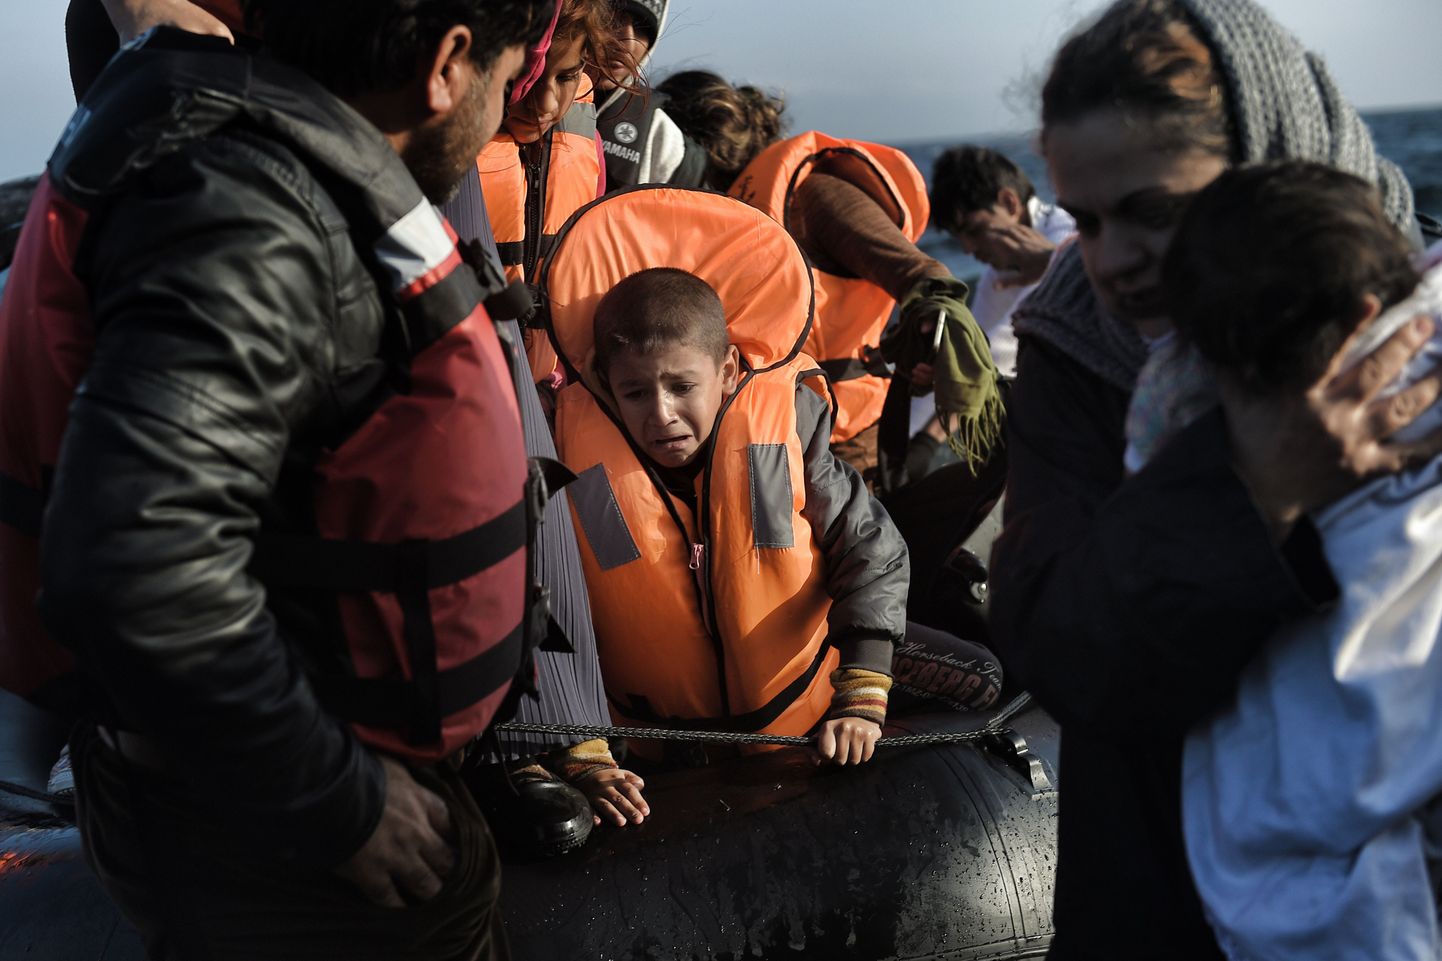 Süüria põgenikud jõudmas üle Egeuse mere Türgist Kreekasse Lesbosele